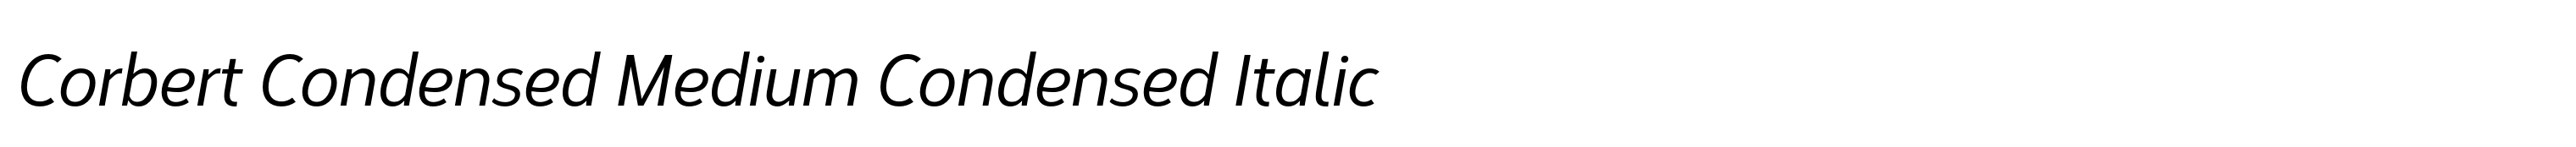 Corbert Condensed Medium Condensed Italic